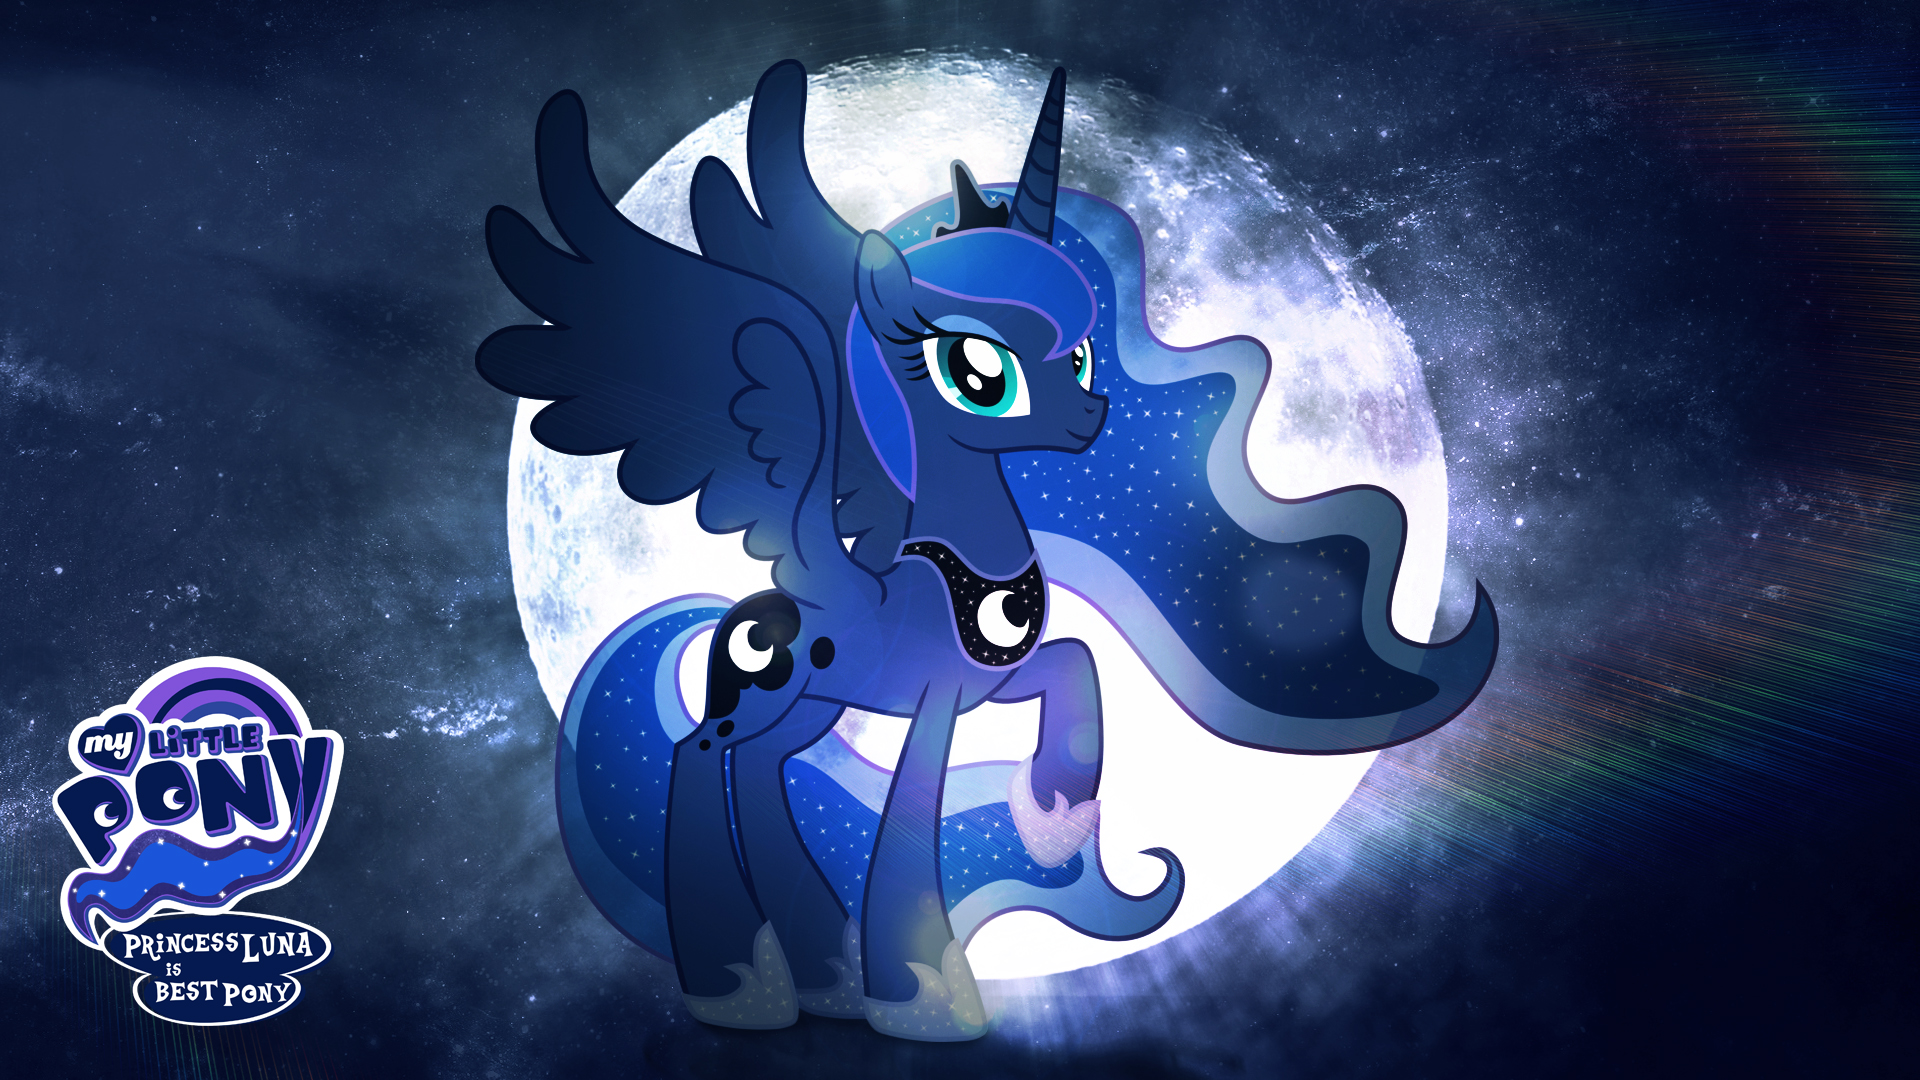 Princess luna is best pony hd wallpaper by jackardy on